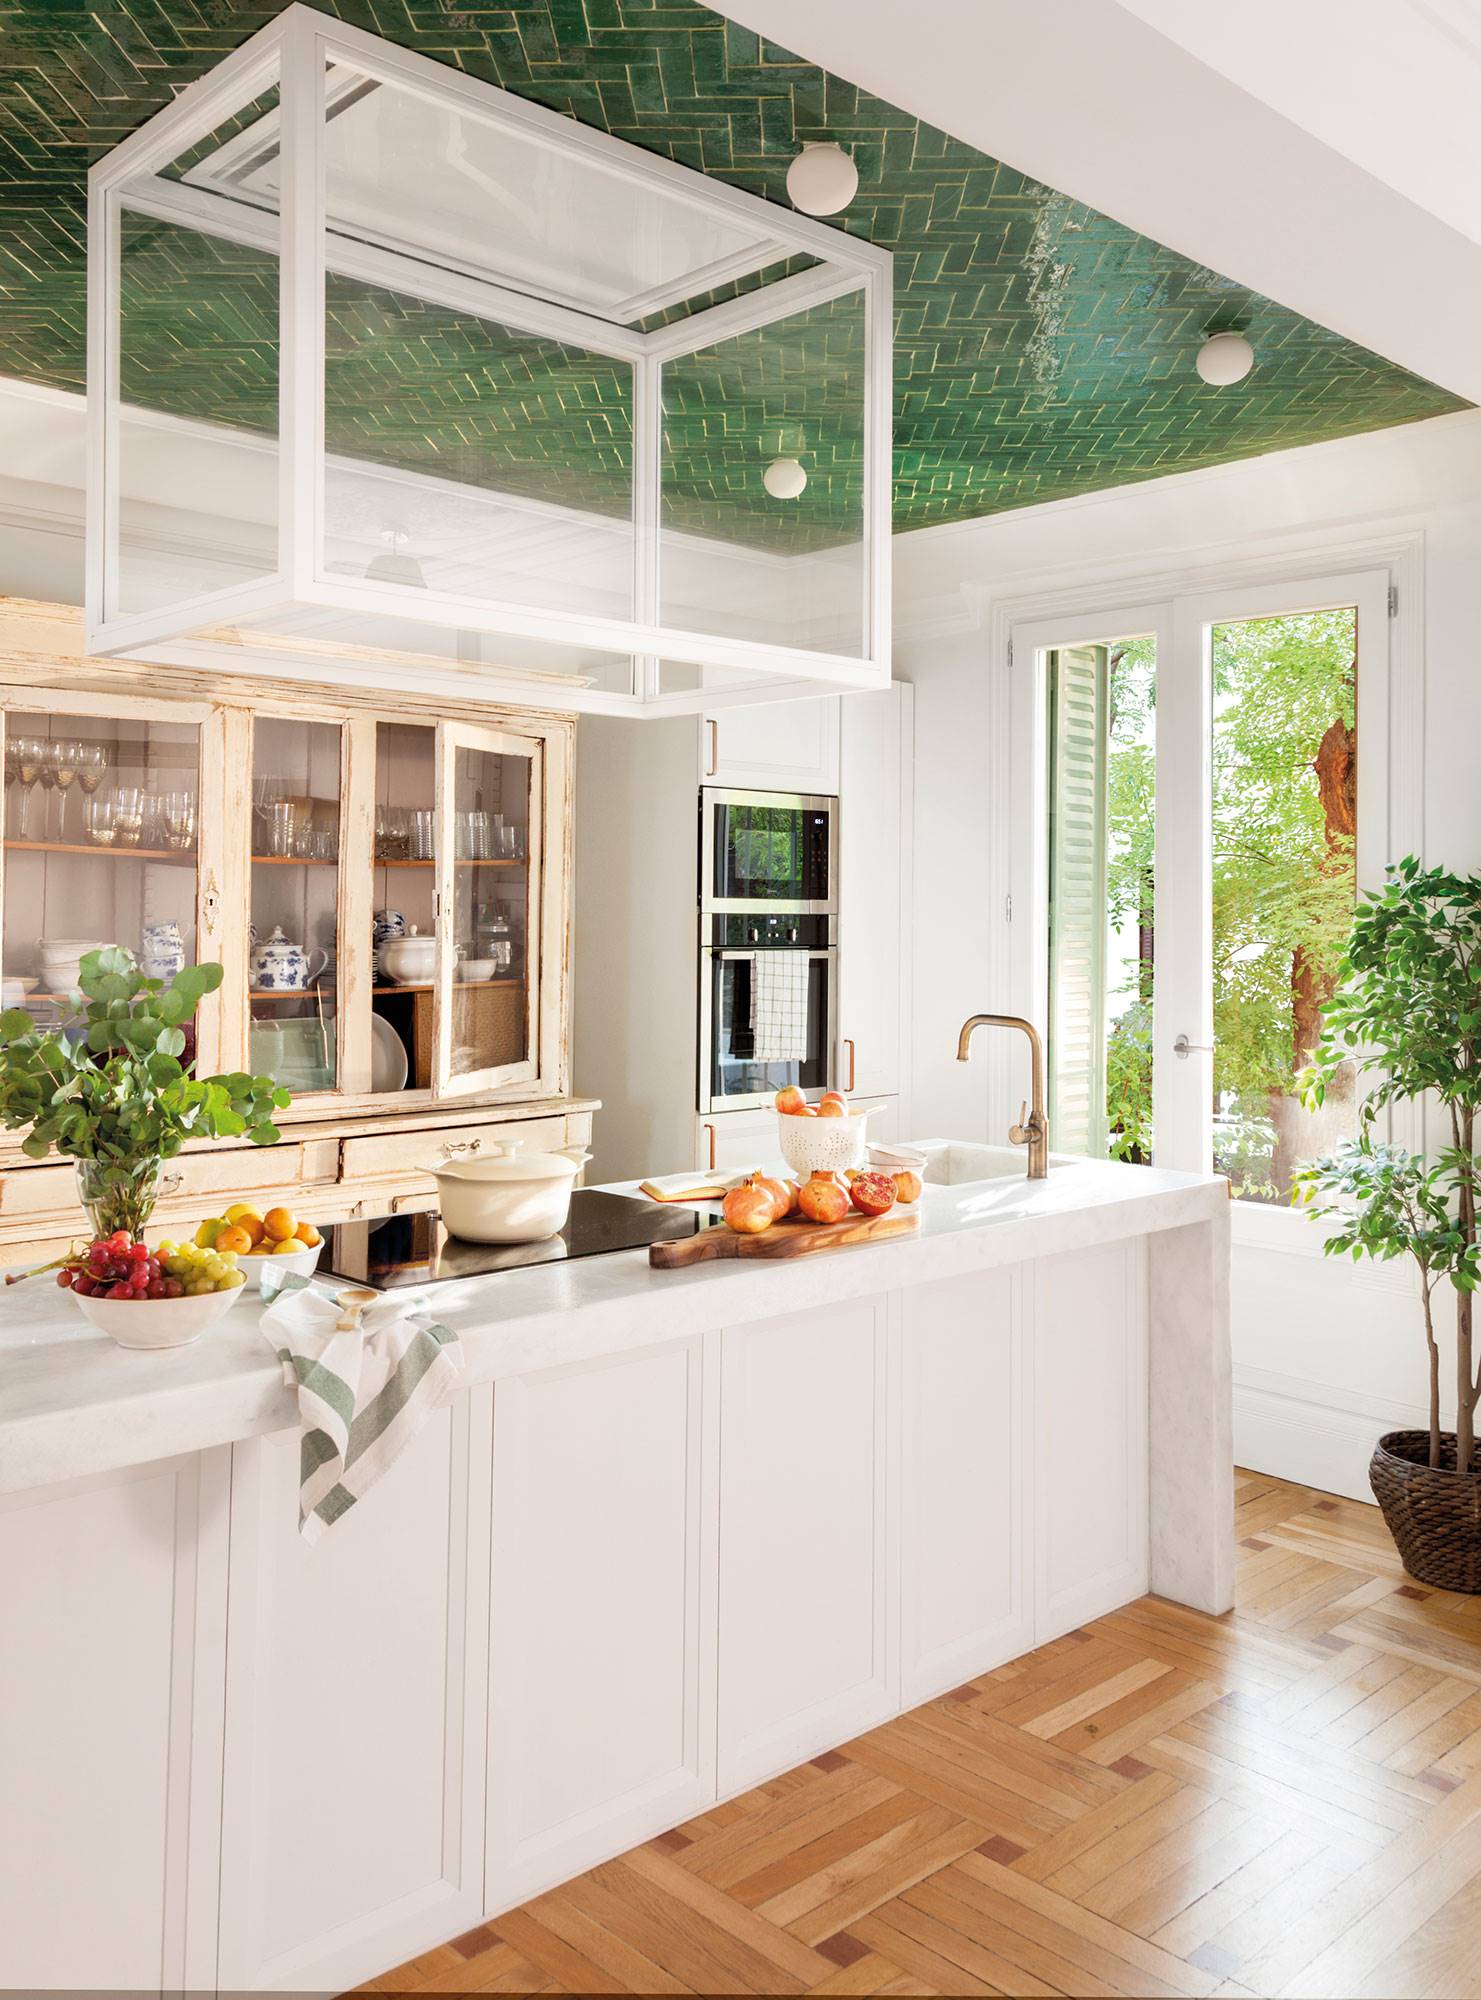 Cocina blanca de estilo clásico con isla y, sobre ella, el techo delimita la zona con azulejos verdes. 